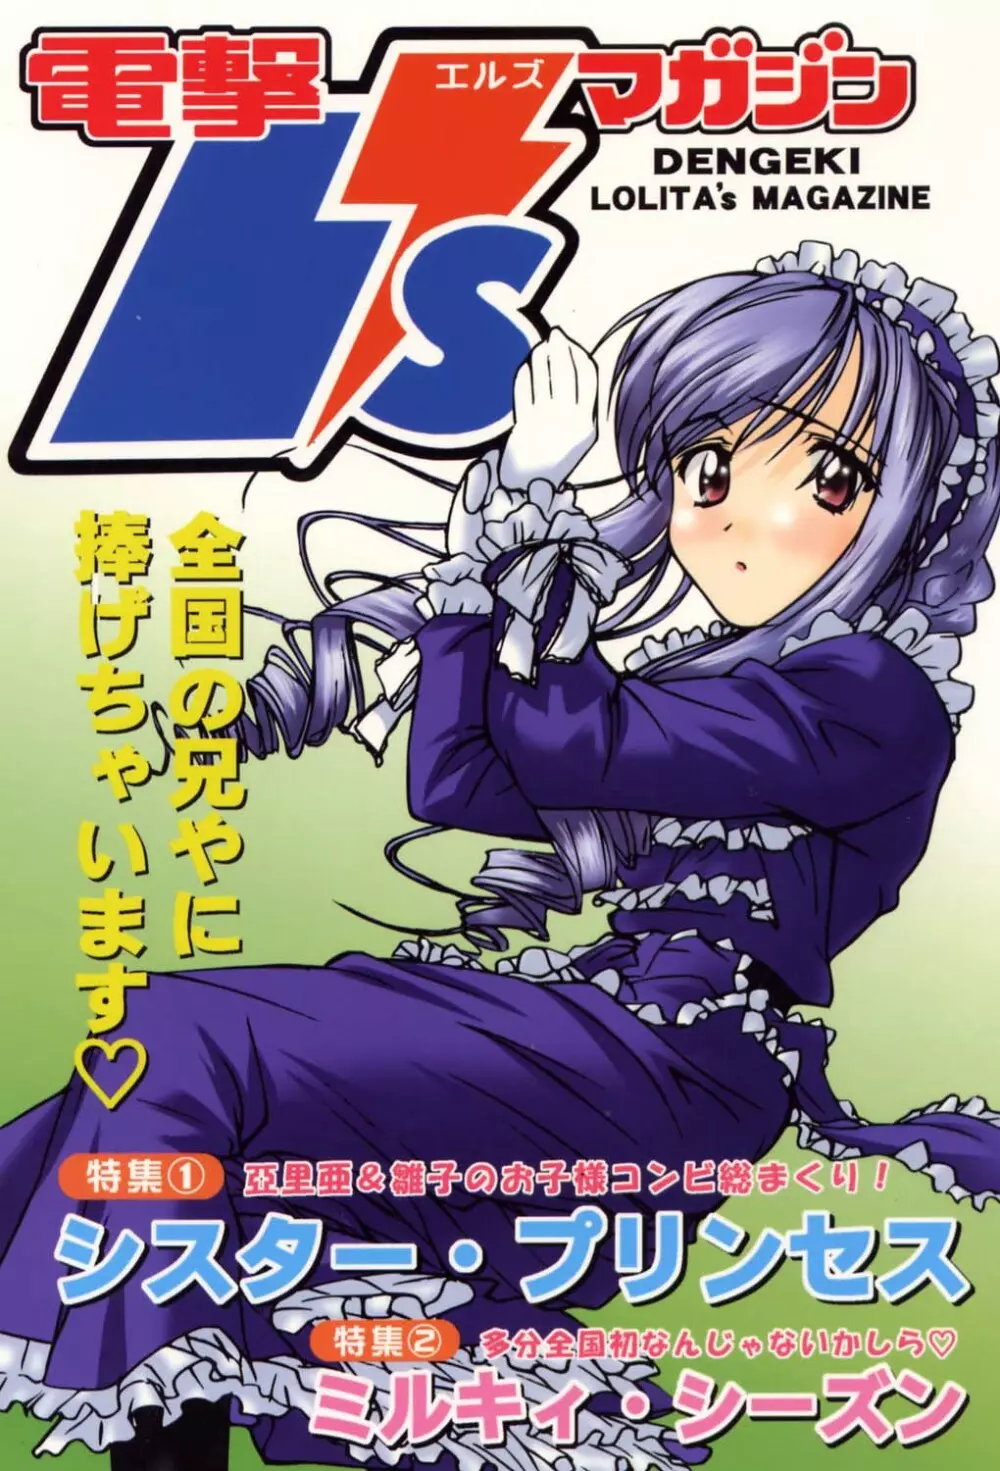 電撃L'sマガジン Dengeki Lolita's Magazine - page1